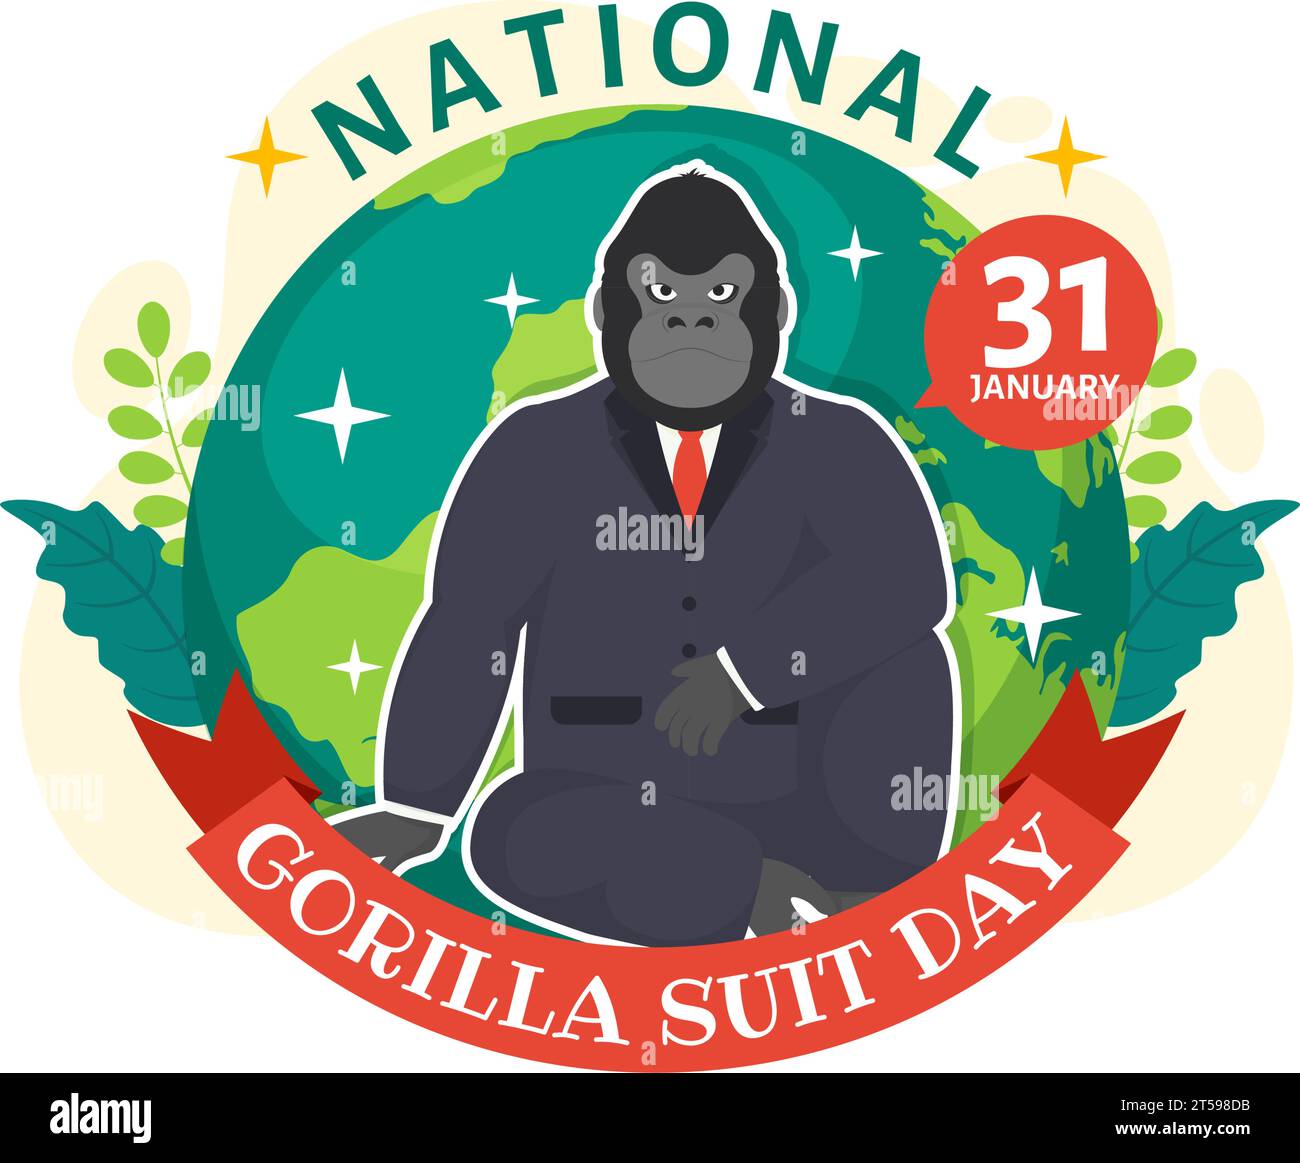 National Gorilla suit jour Vector Illustration le 31 janvier avec a la tête d'un gorille est habillé soigneusement dans un costume et carte du monde en arrière-plan Illustration de Vecteur